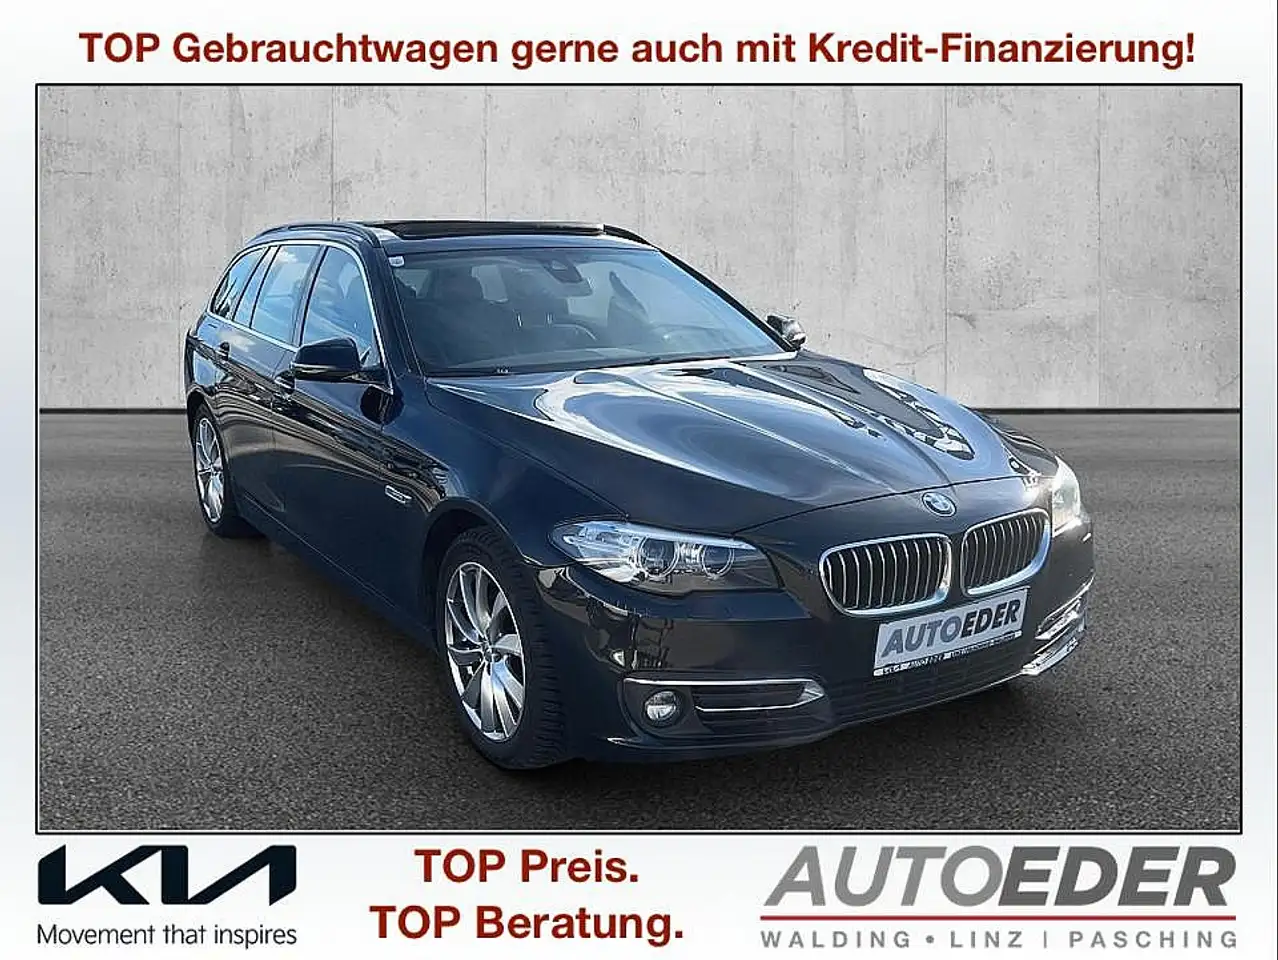 BMW 520 Break in Zwart tweedehands in Pasching voor € 11.380,-